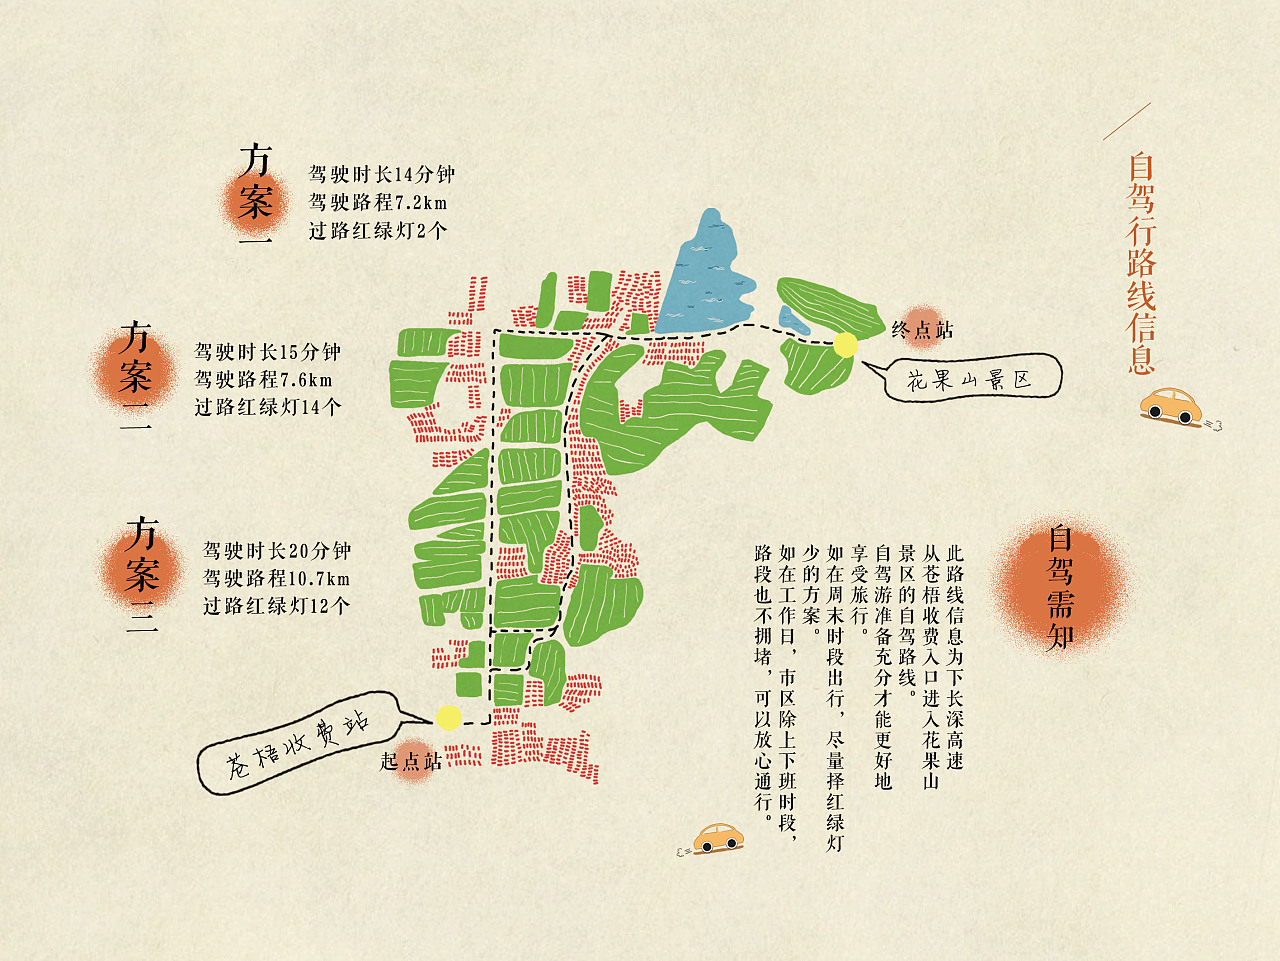 收藏 花果山旅游手册之外地游客自驾去景区的路线导向图